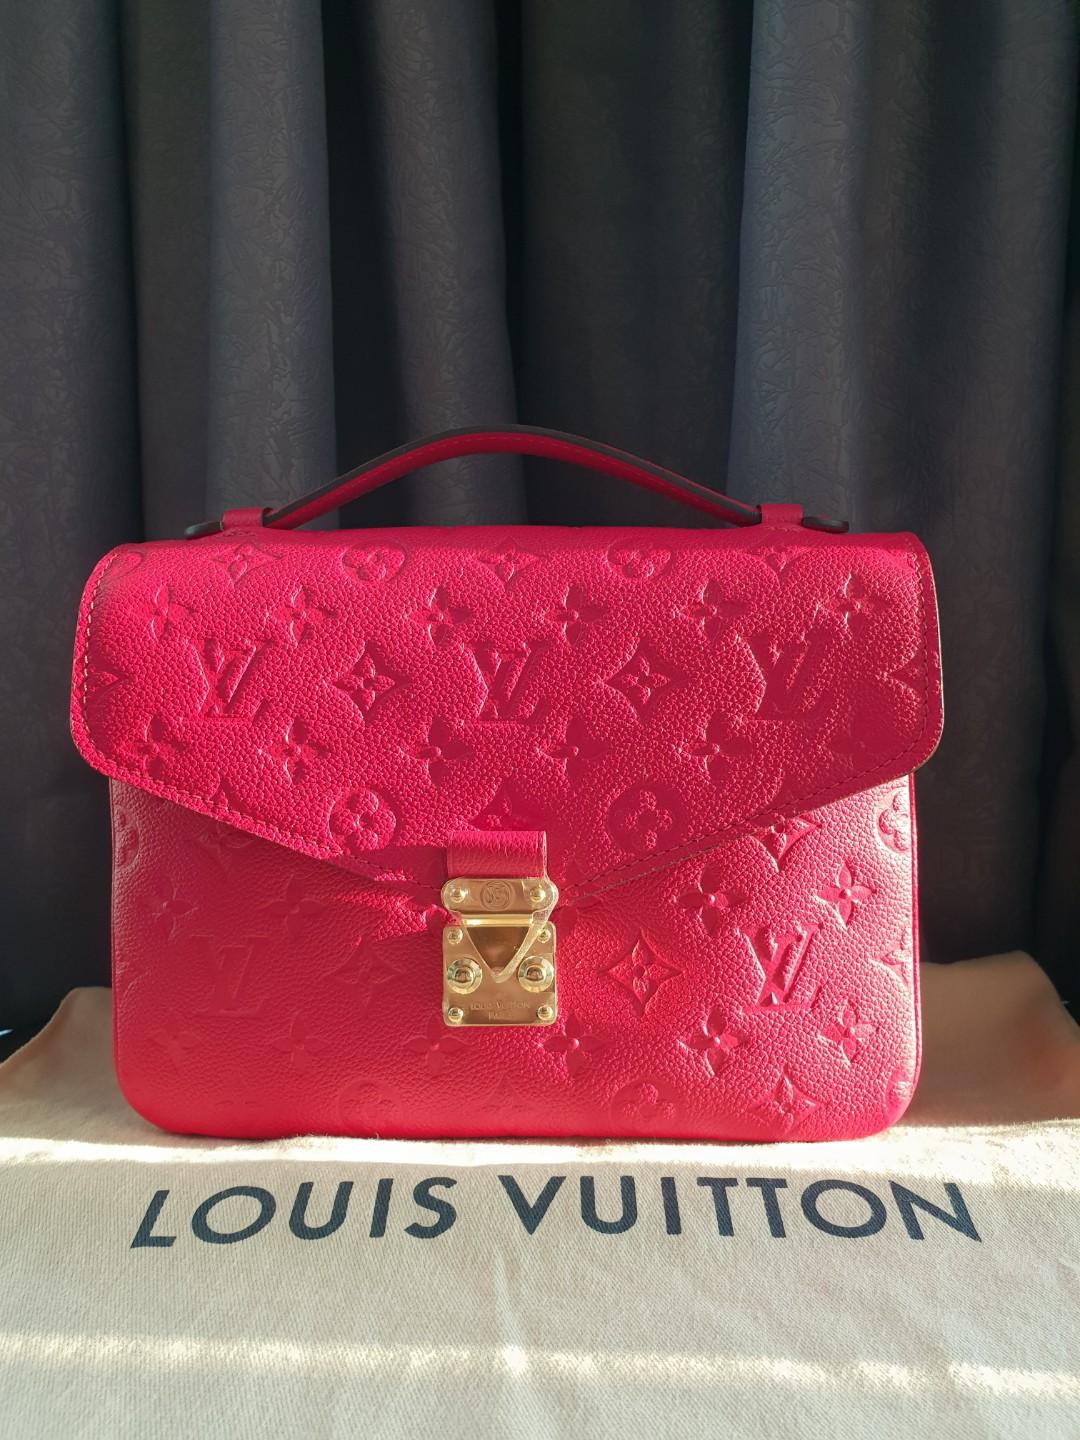 Louis Vuitton Pochette Metis Empreinte Freesia - LVLENKA Luxury Consignment